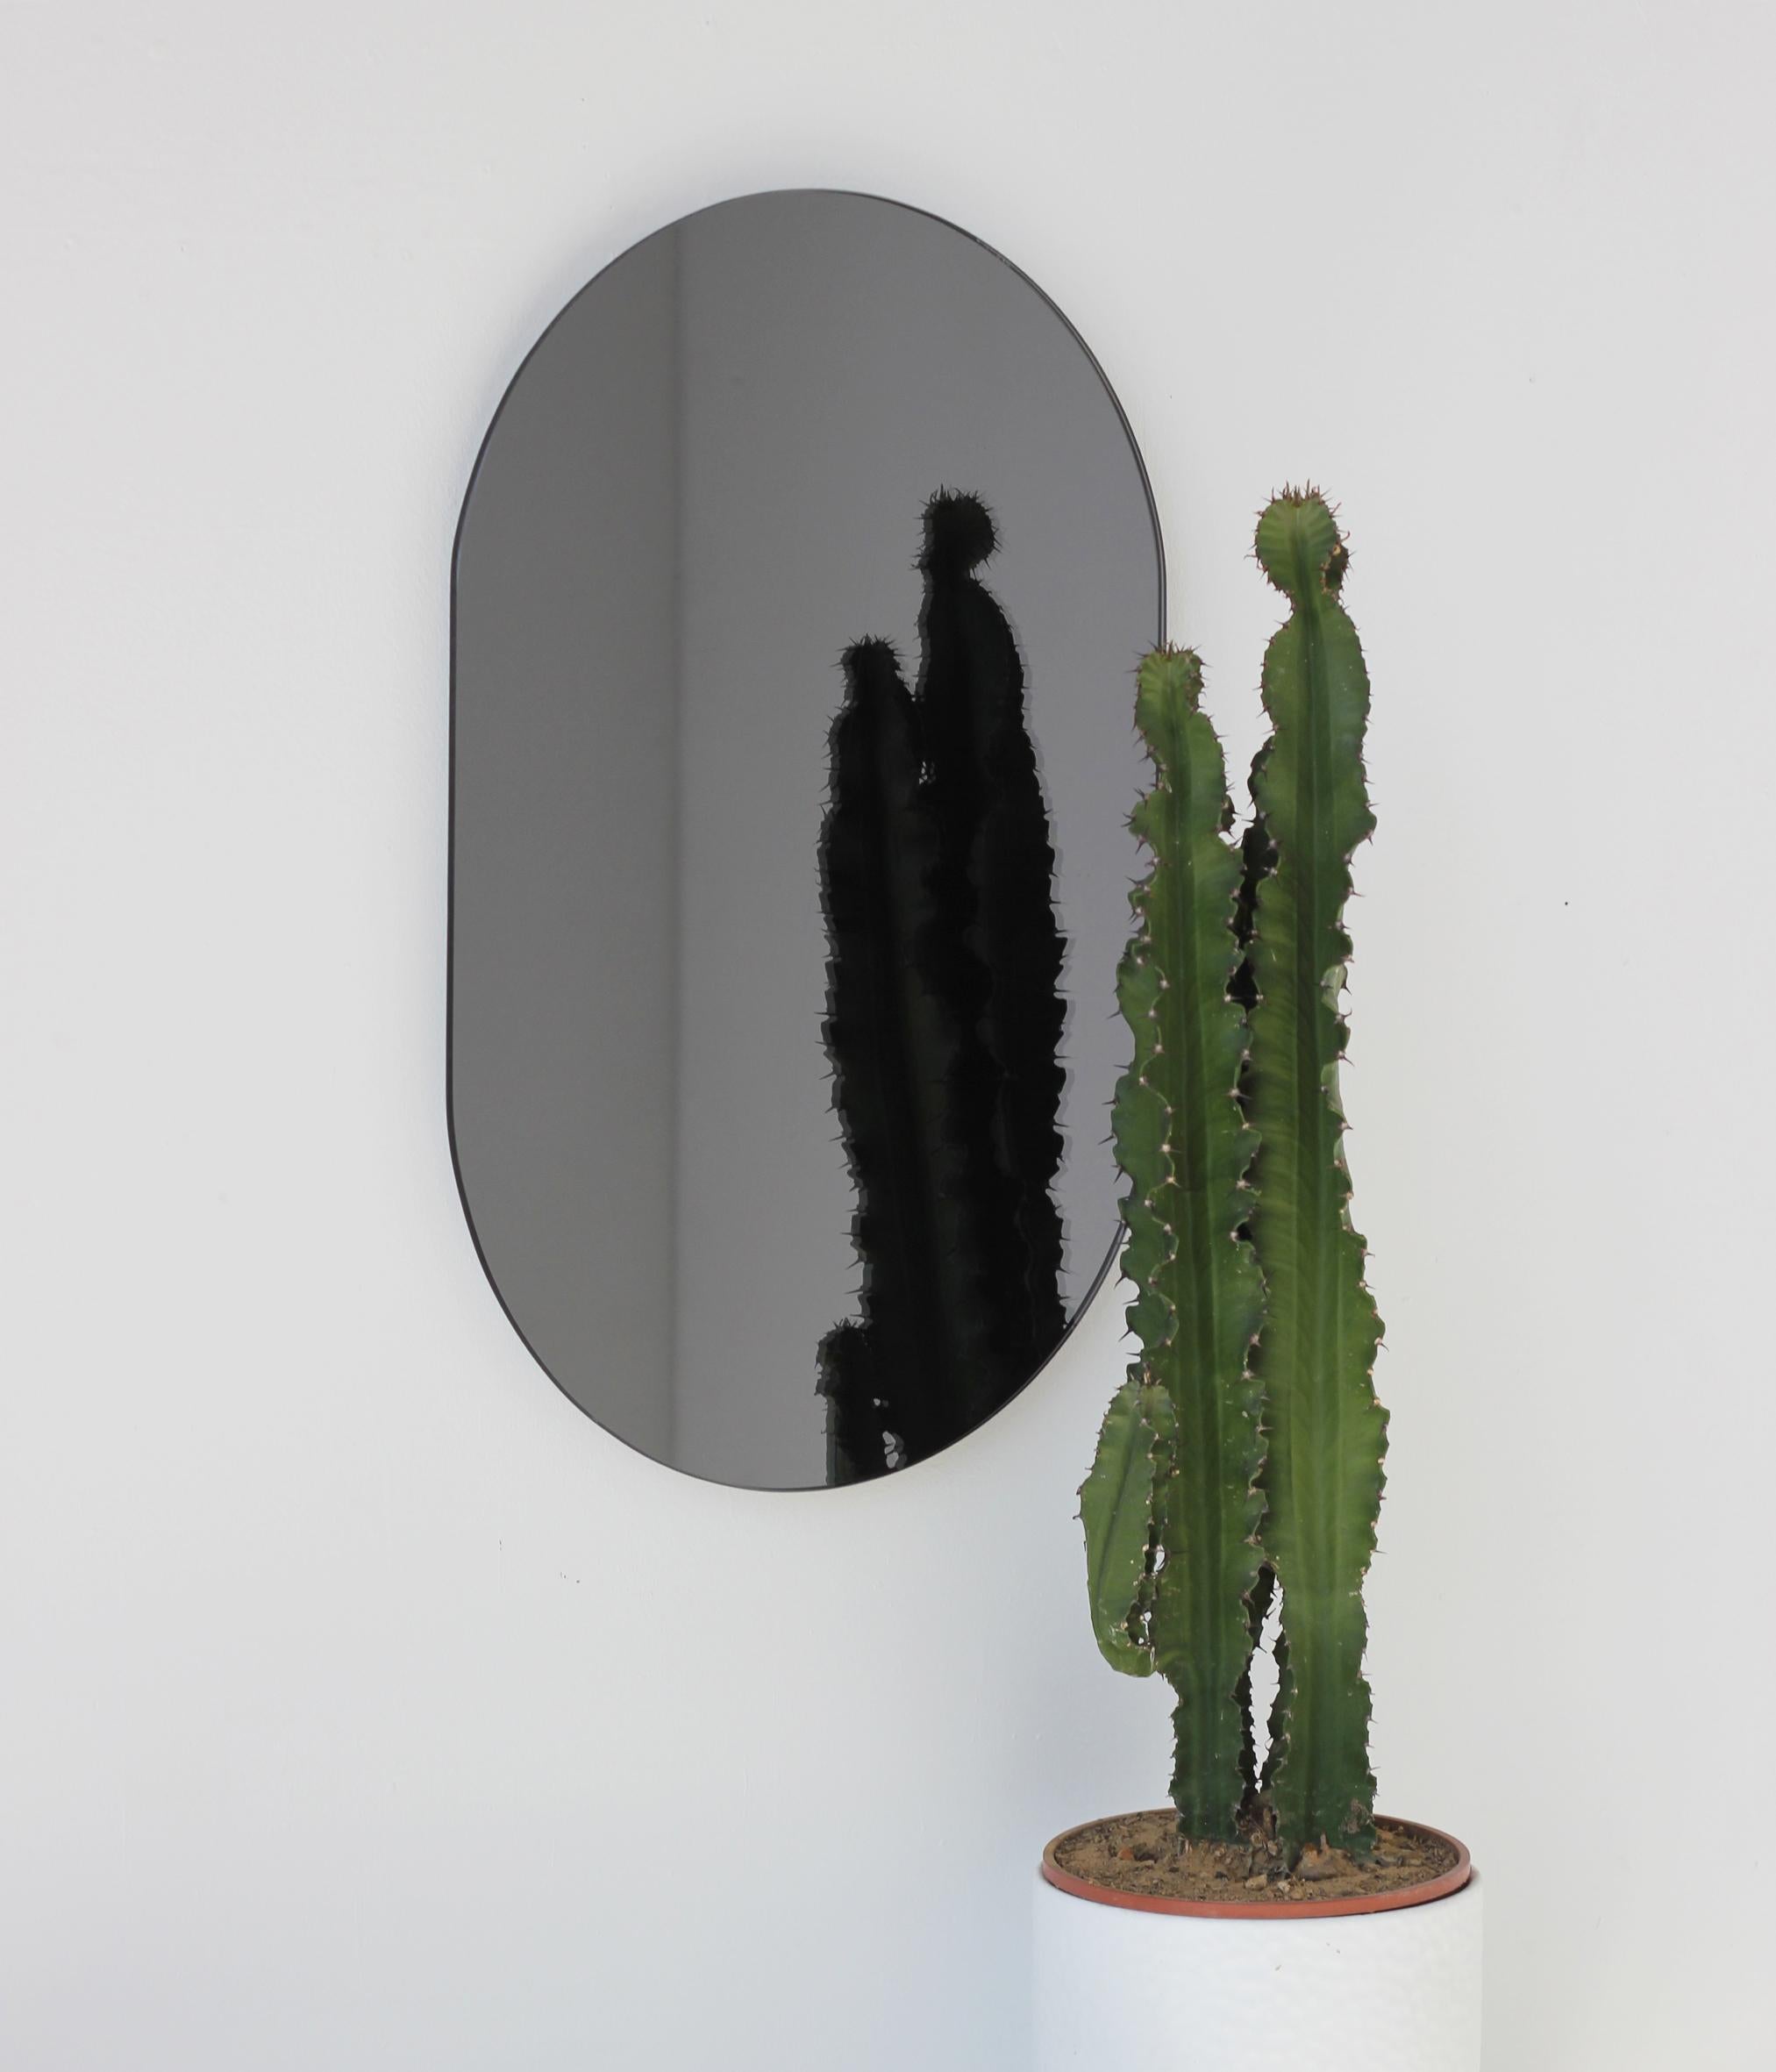 Miroir sans cadre noir teinté en forme de capsule minimaliste. Un design de qualité qui garantit que le miroir est parfaitement parallèle au mur. Conçu et fabriqué à Londres, au Royaume-Uni.

Equipé de plaques professionnelles non visibles une fois